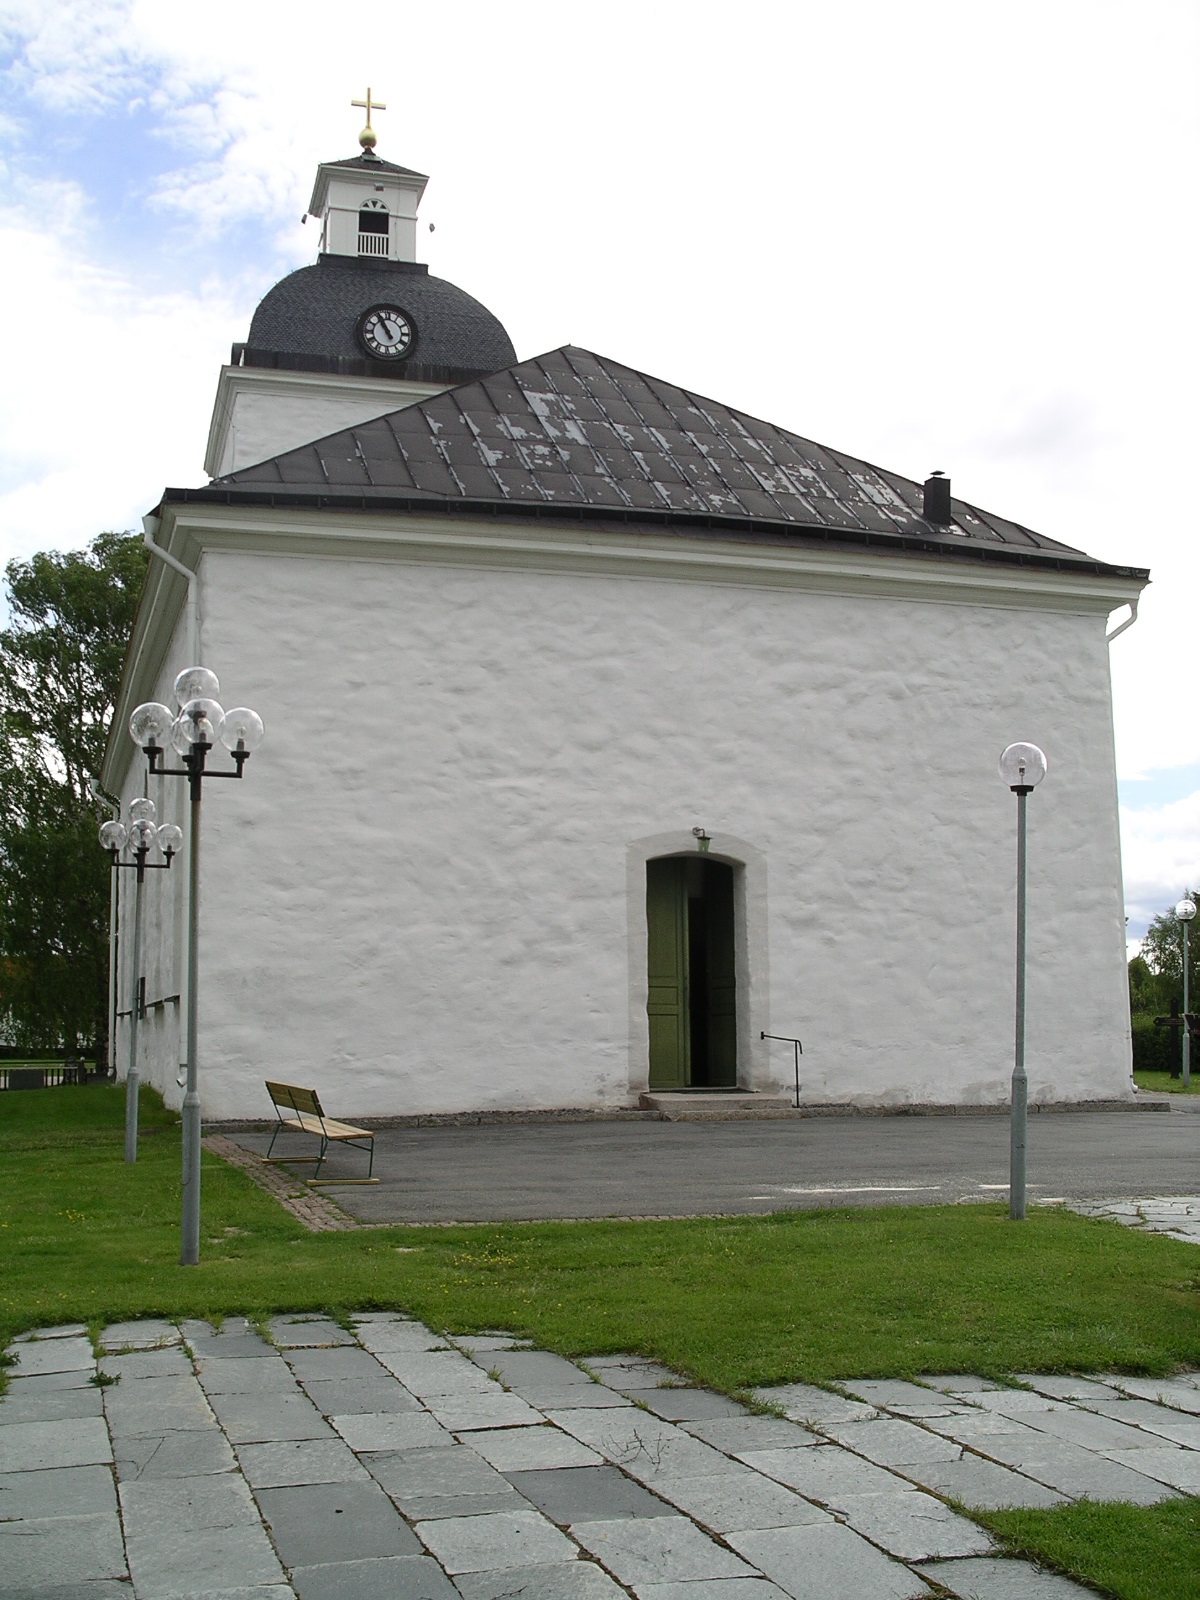 Ytterhogdal kyrka, exteriör, vy från väster.


Bilderna är tagna av Christina Persson & Isa Lindkvist vid Jämtlands läns museum i samband med inventeringen 2005-2006. 